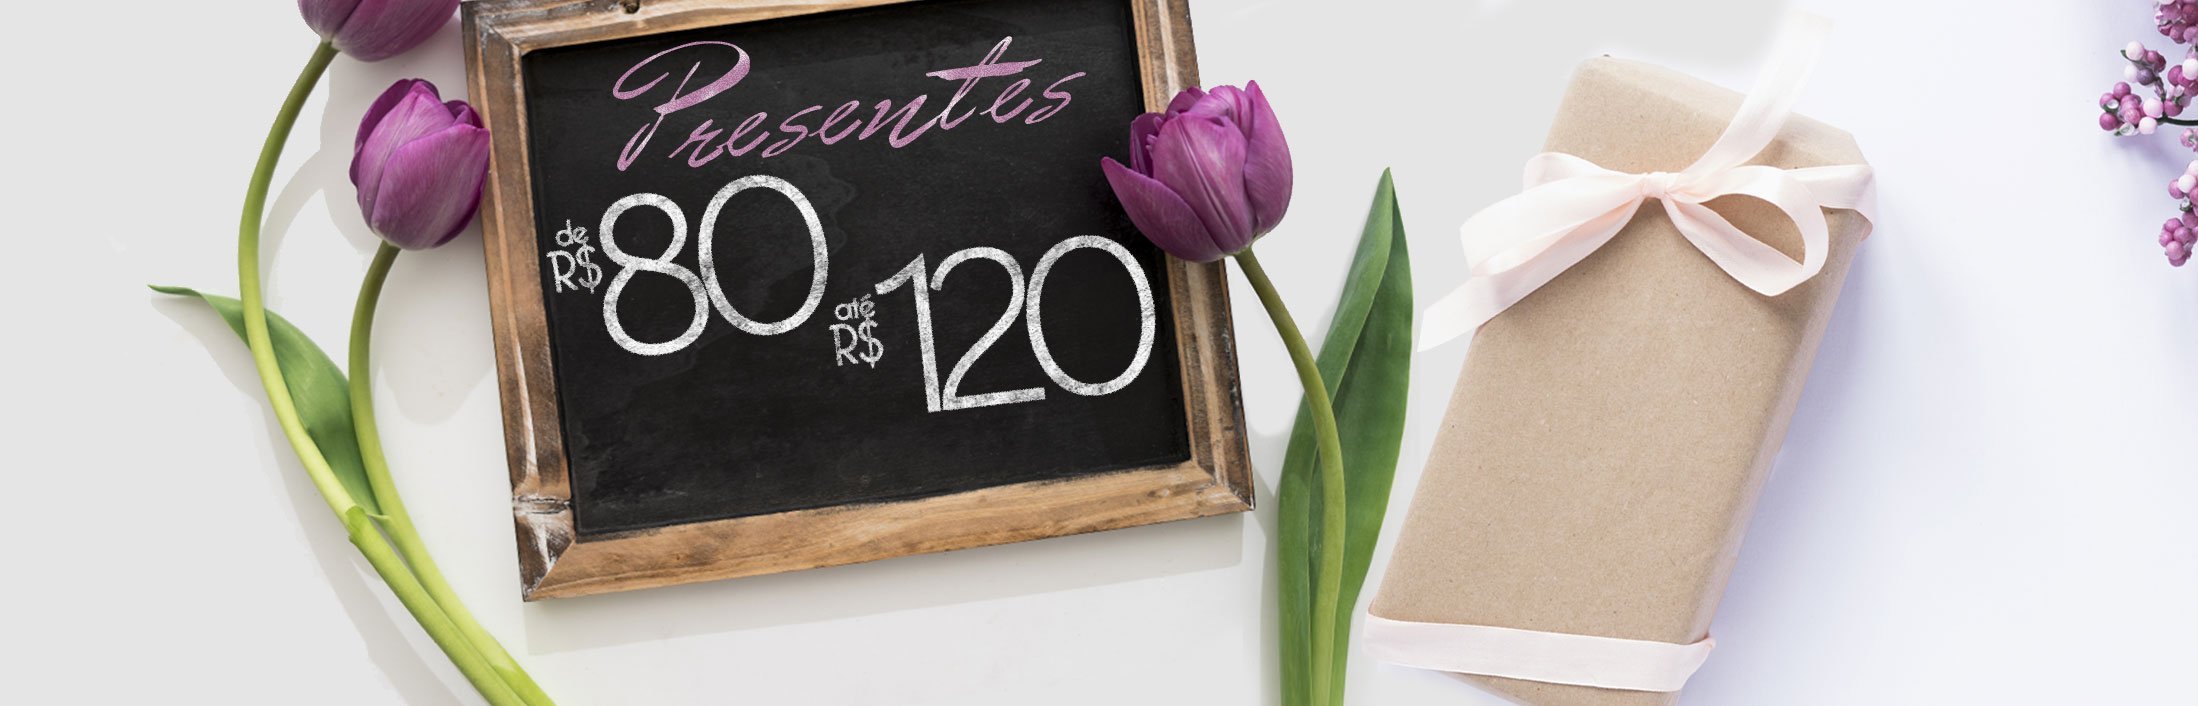 Flores e Presentes com preço de R$80 até R$120